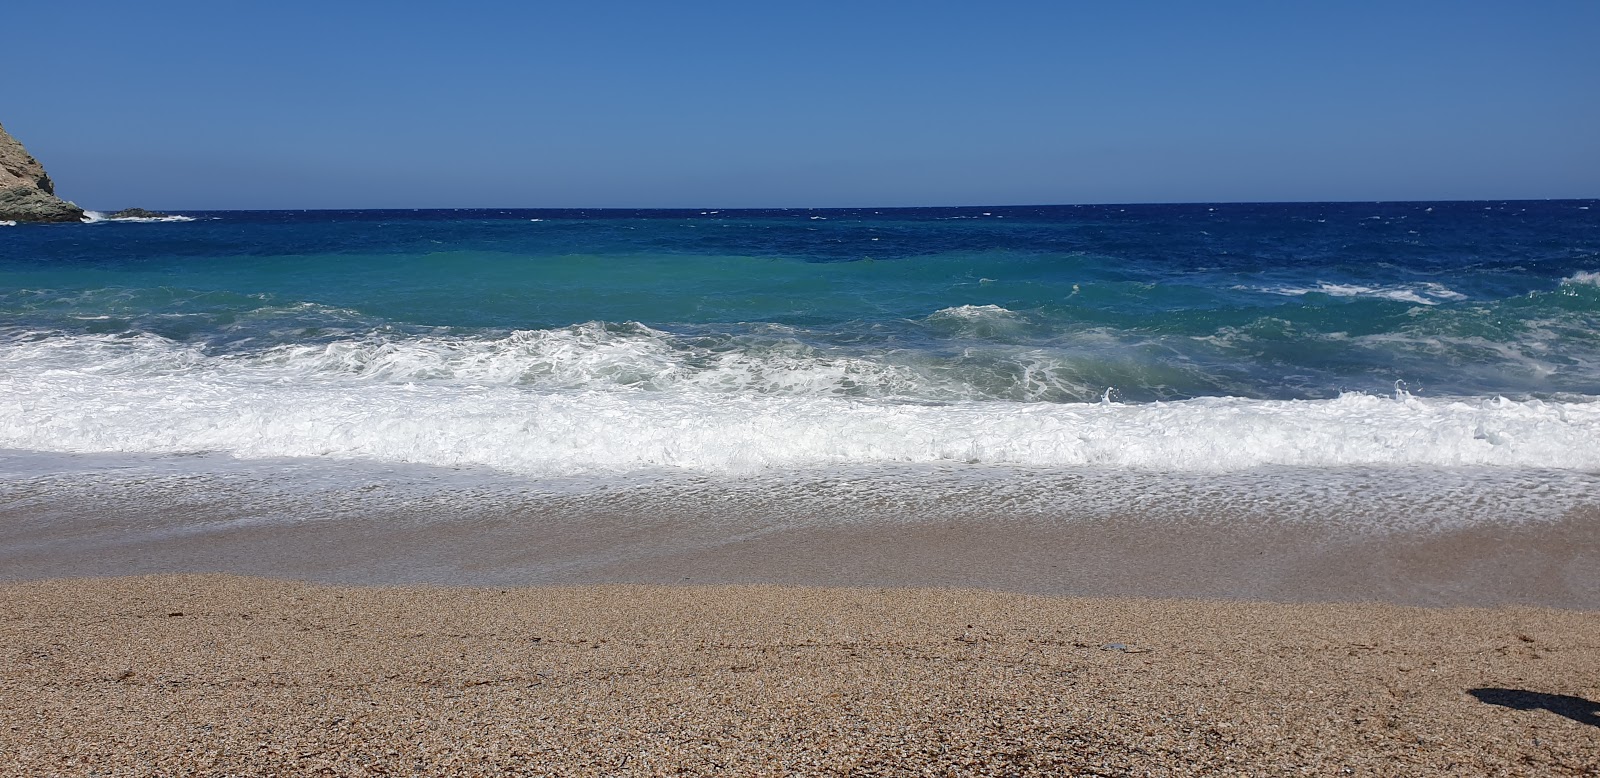 Foto de Giannitsi beach - lugar popular entre os apreciadores de relaxamento